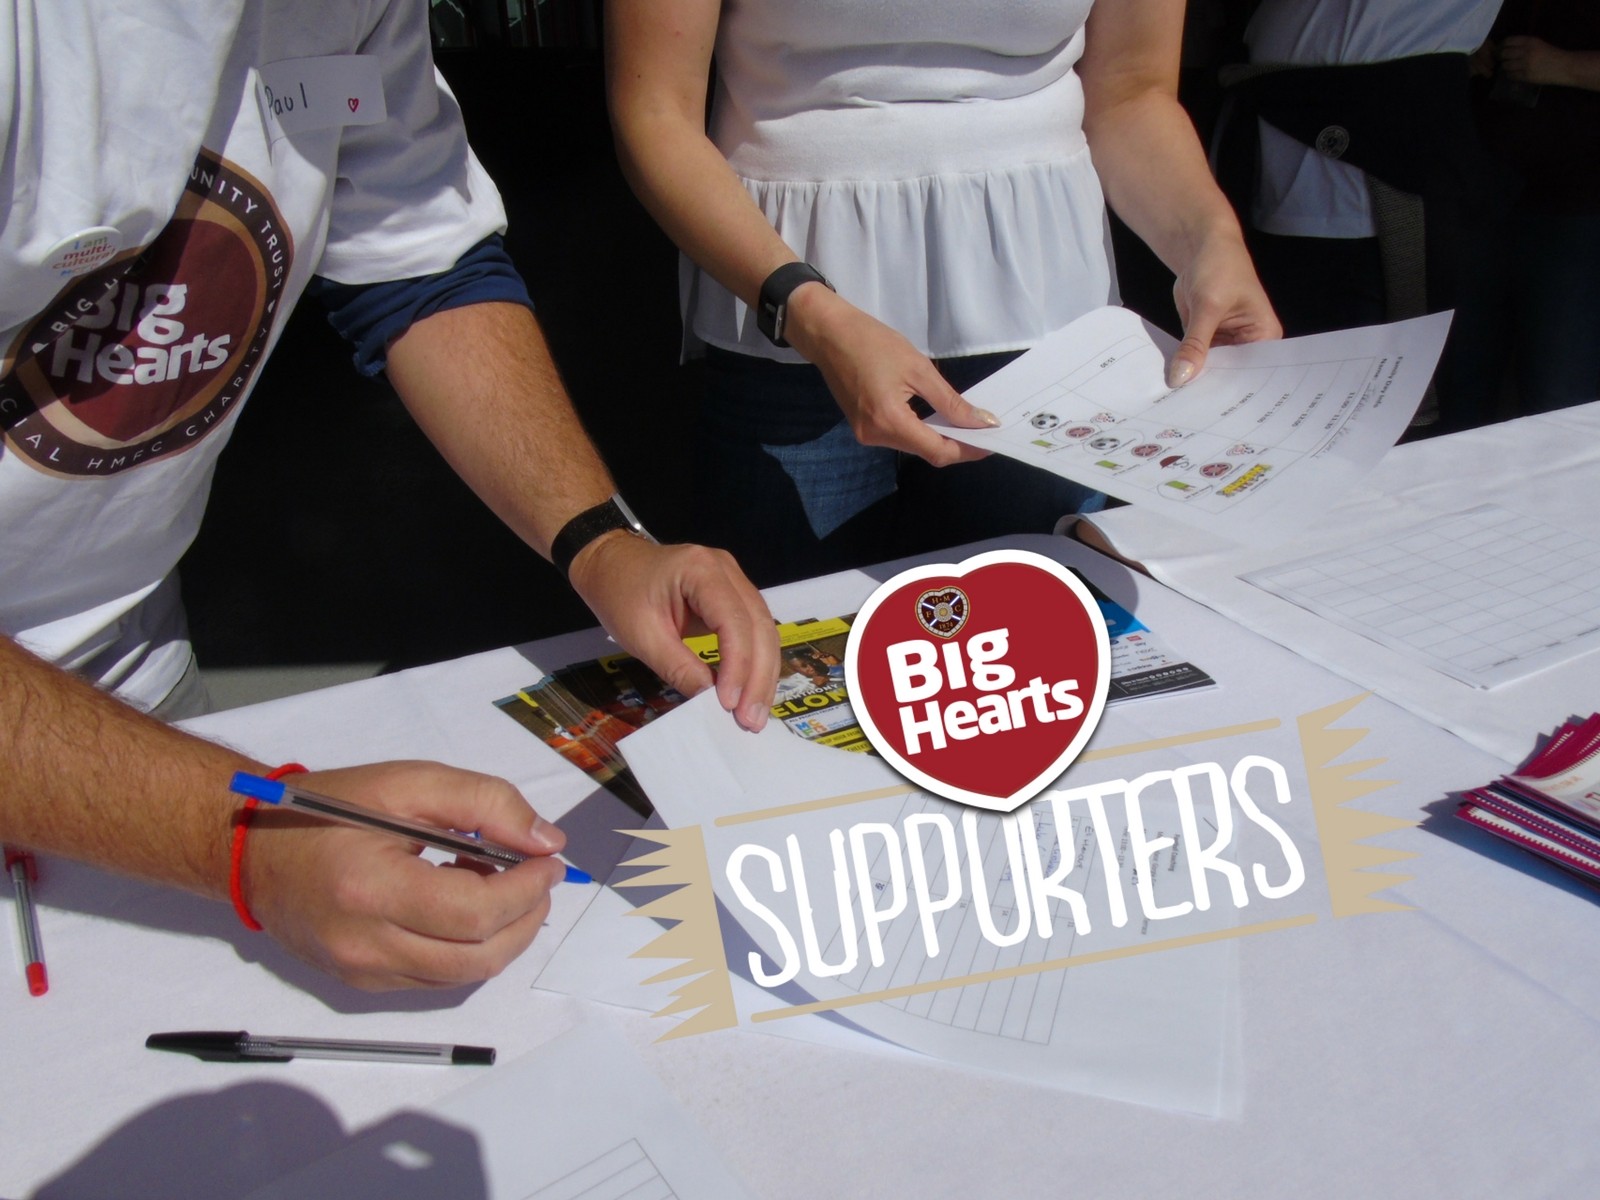  » Visit Big Hearts at Edinburgh’s Volunteer Fair 2017